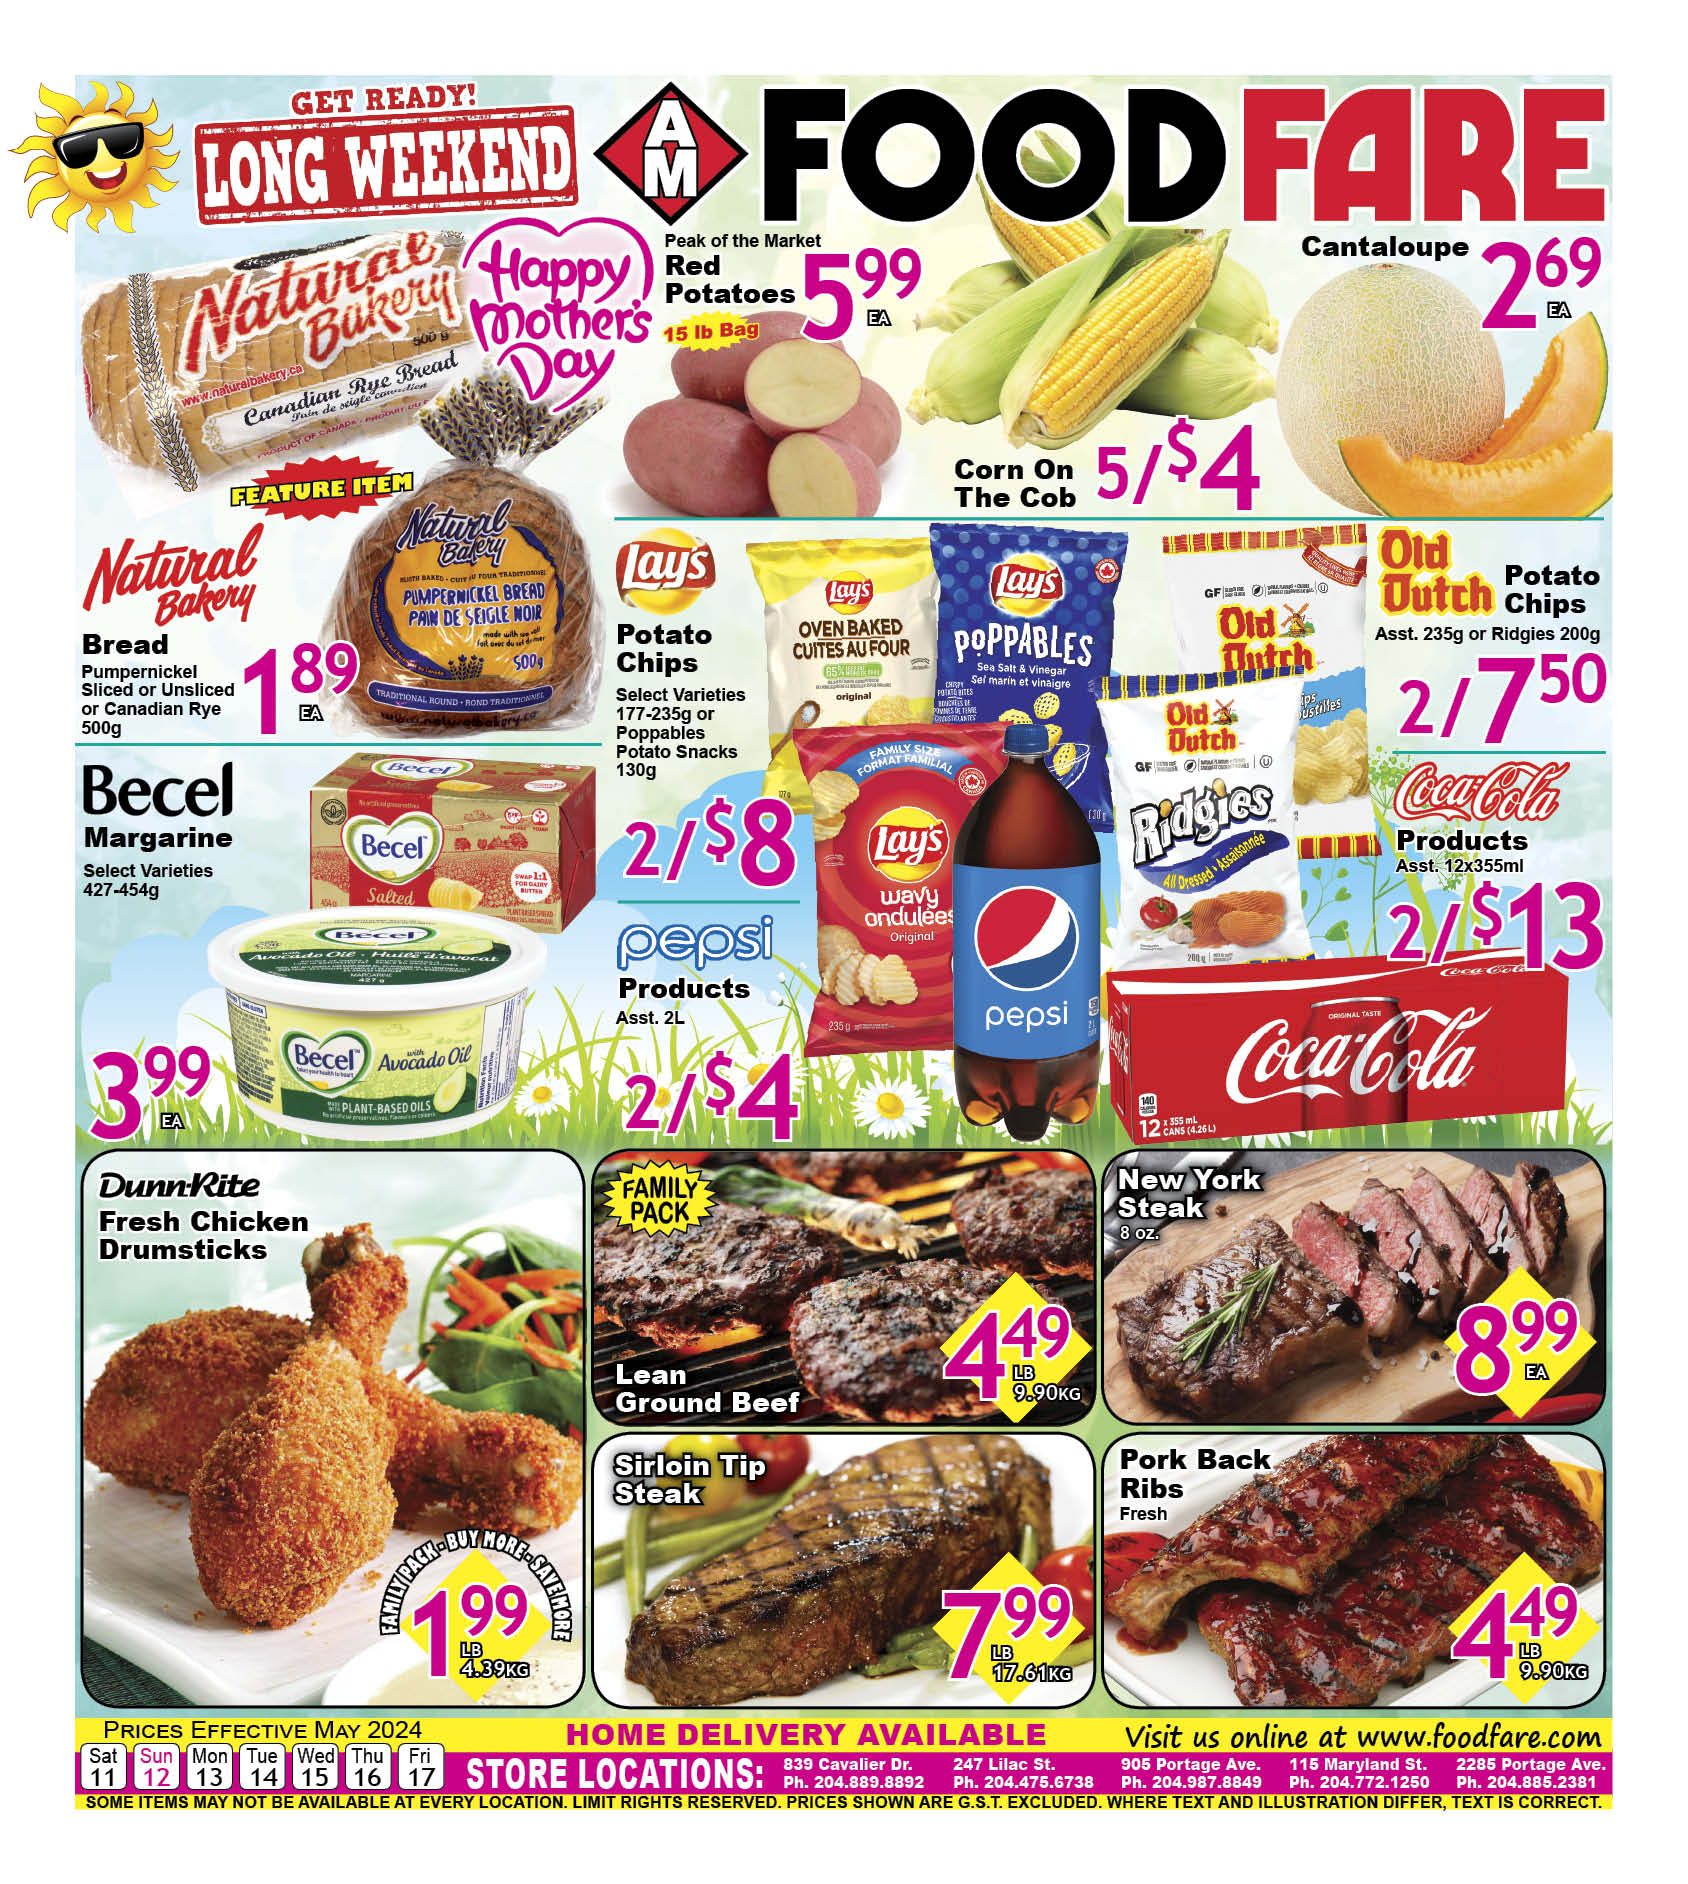 Food Fare - Weekly Flyer Specials